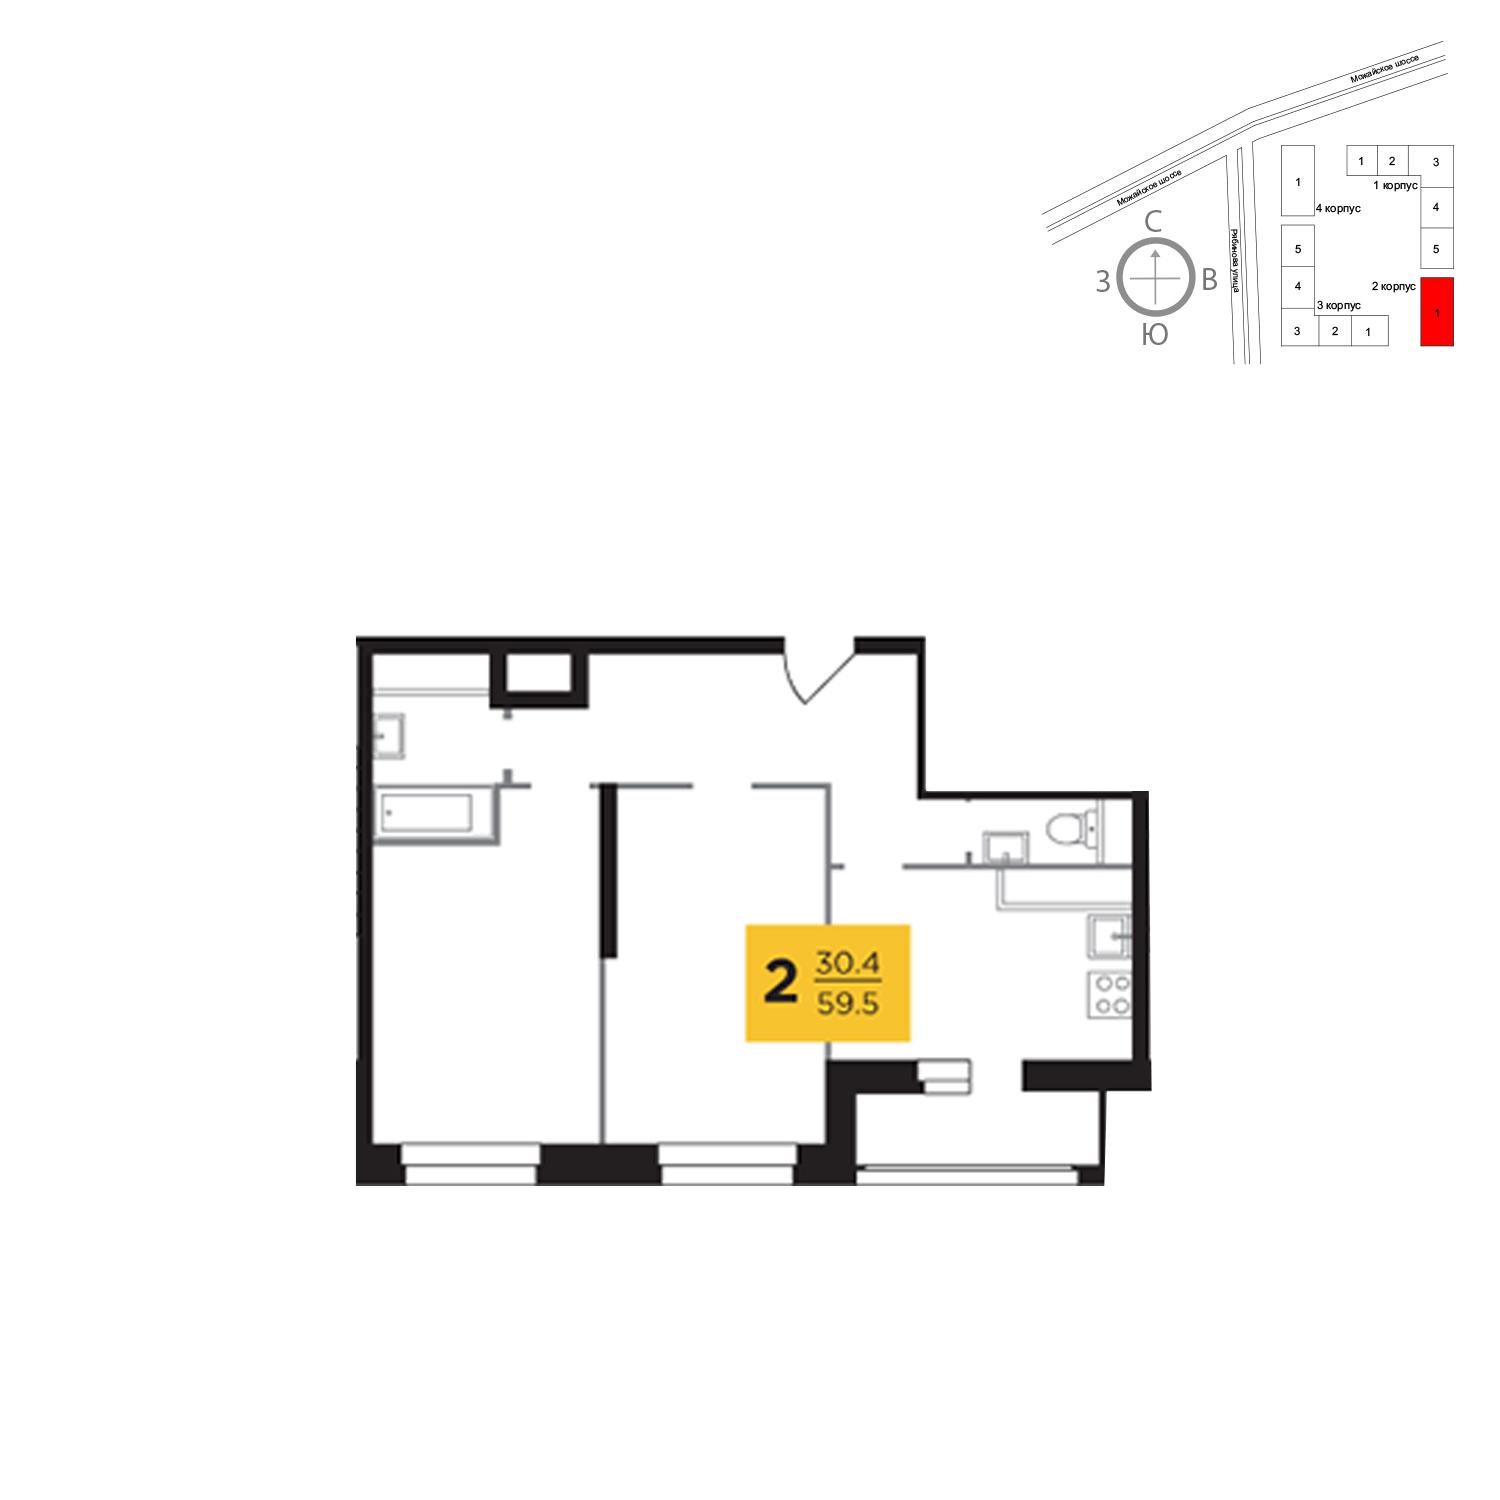 Продаётся 2-комнатная квартира в новостройке 59.5 кв.м. этаж 8/23 за 13 231 899 руб 